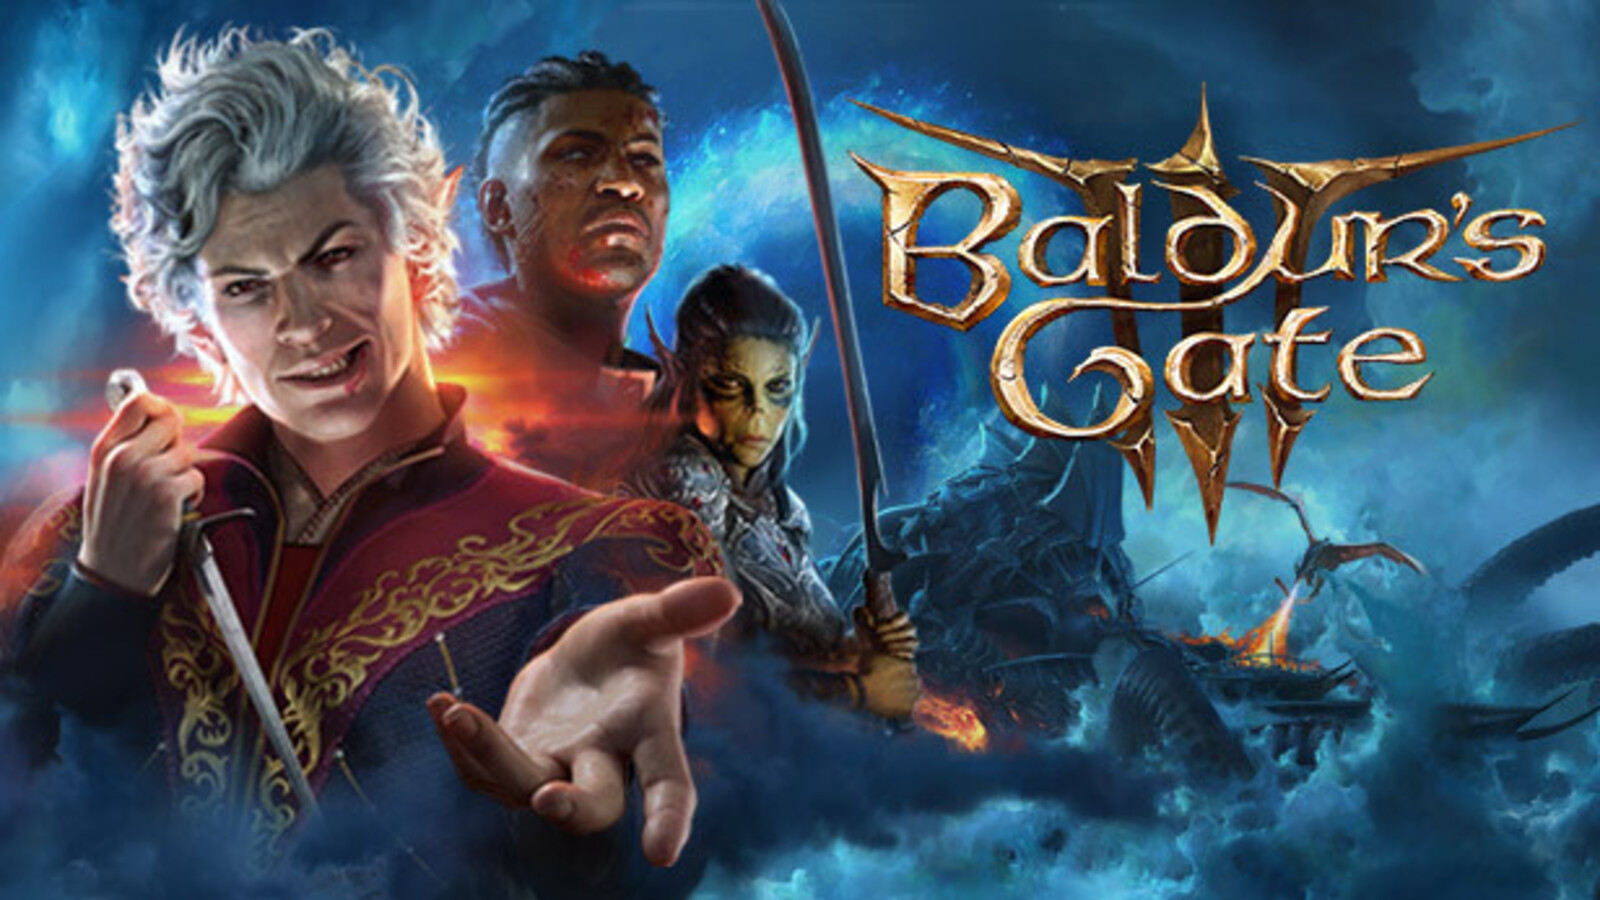 Baldurs Gate geliştiricisi, Patch 3 güncellemesinin ertelendiğini duyurdu